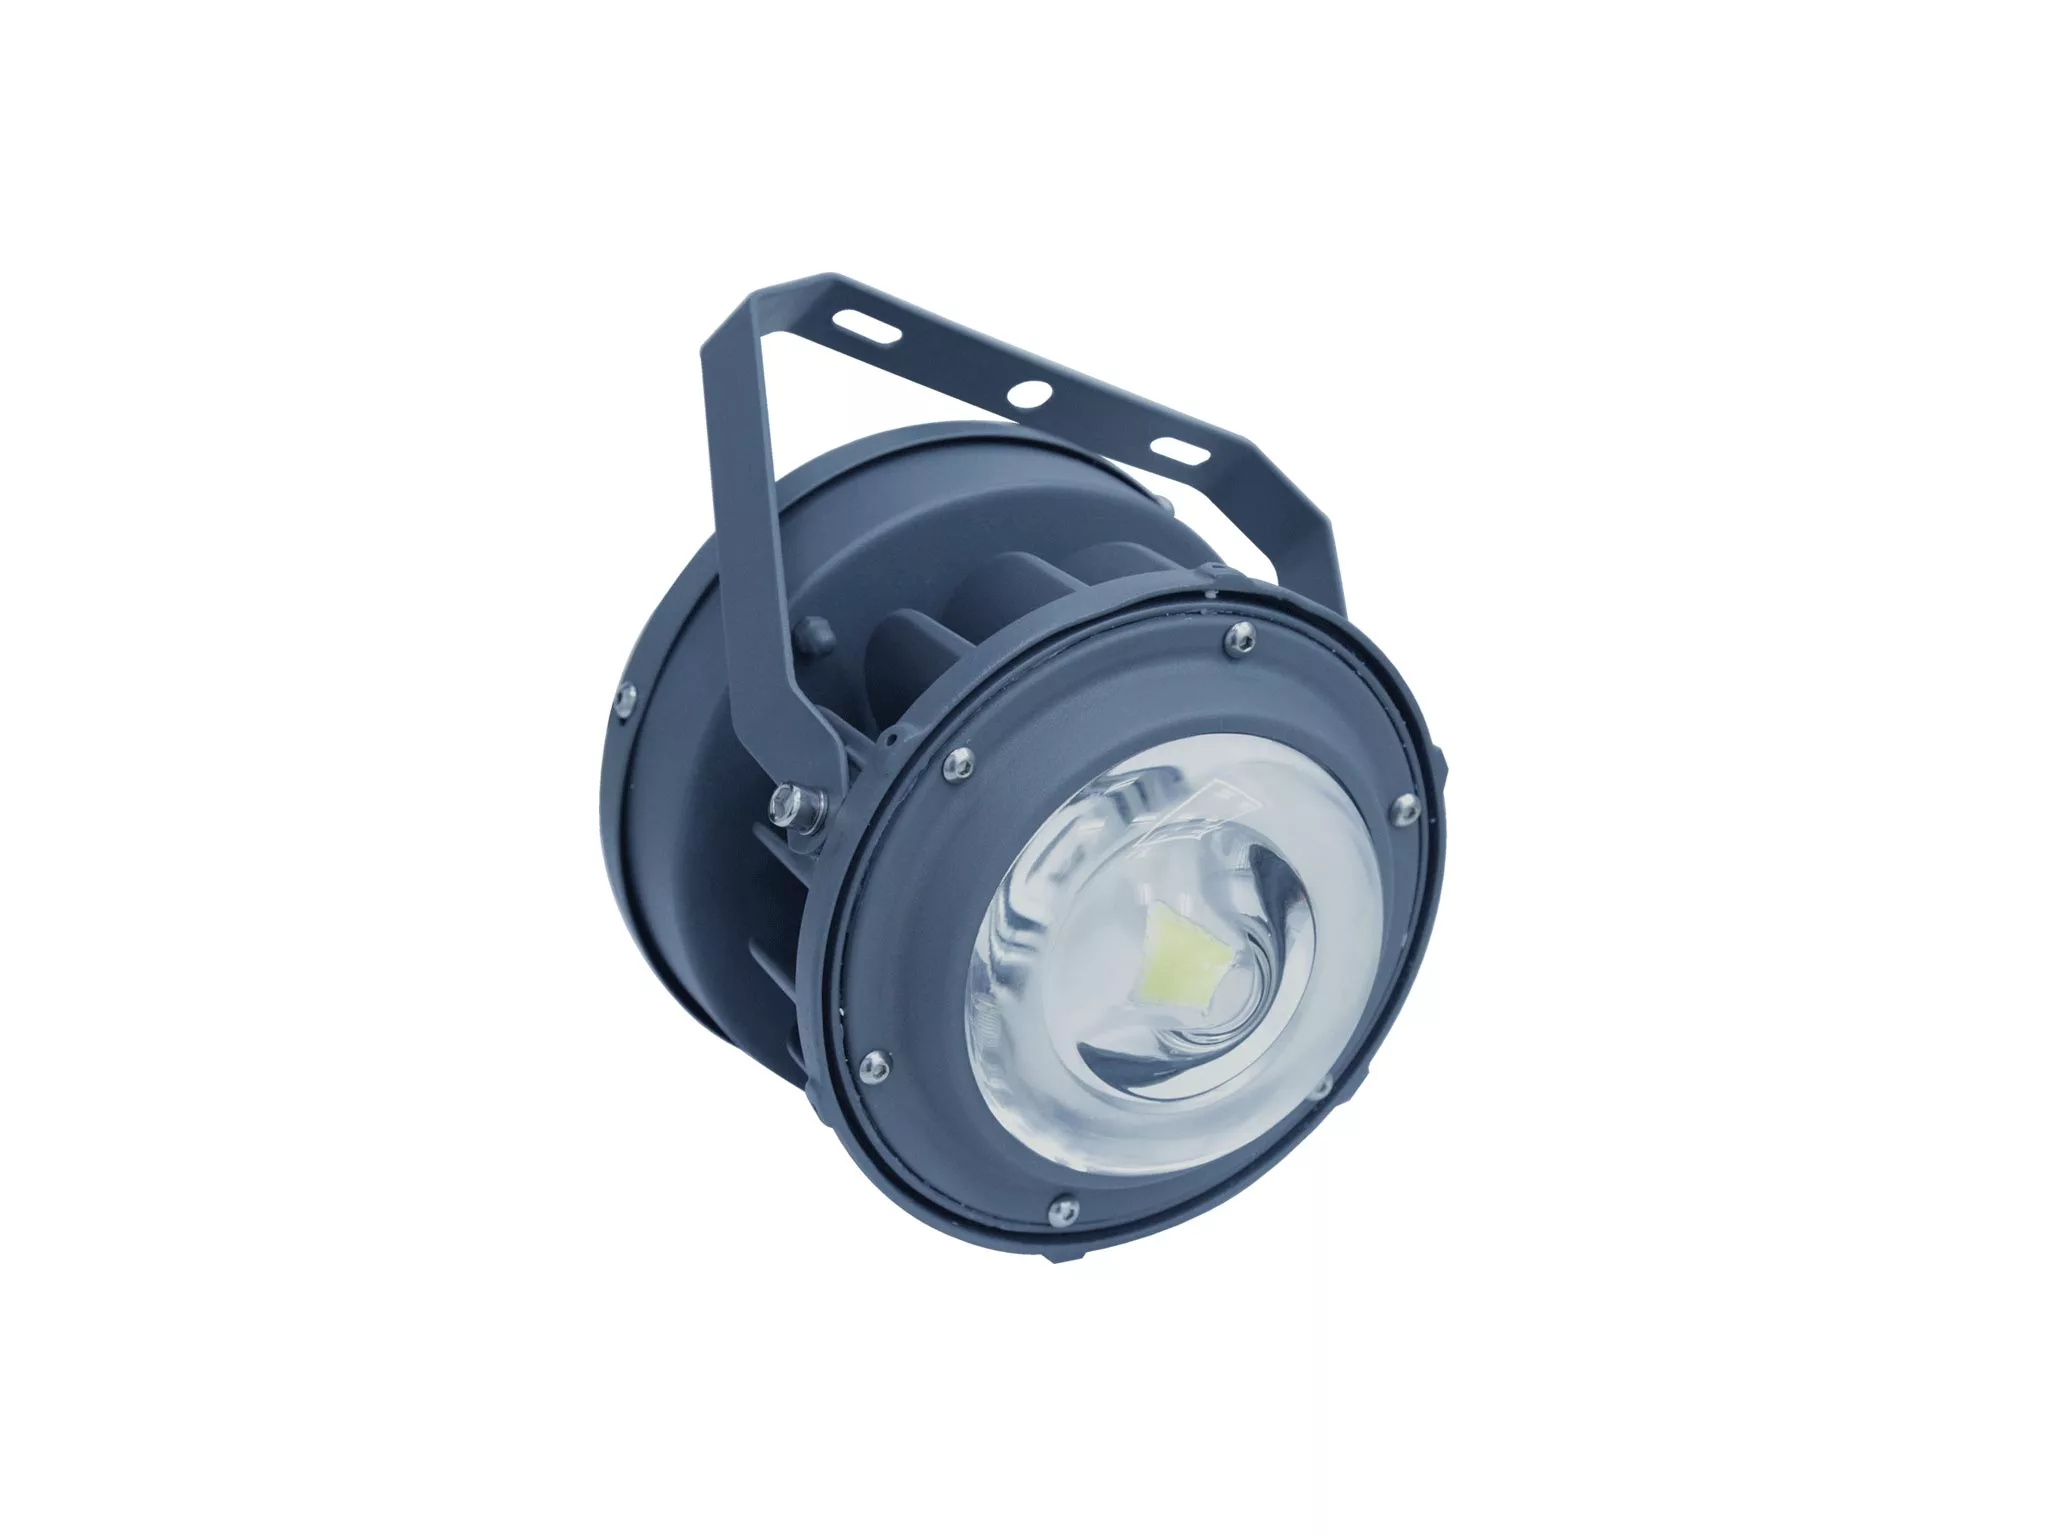 Подвесной промышленный светильник ACORN LED 20 RN1 D150 5000K with tempered glass 36 VAC G3/4 1490000140